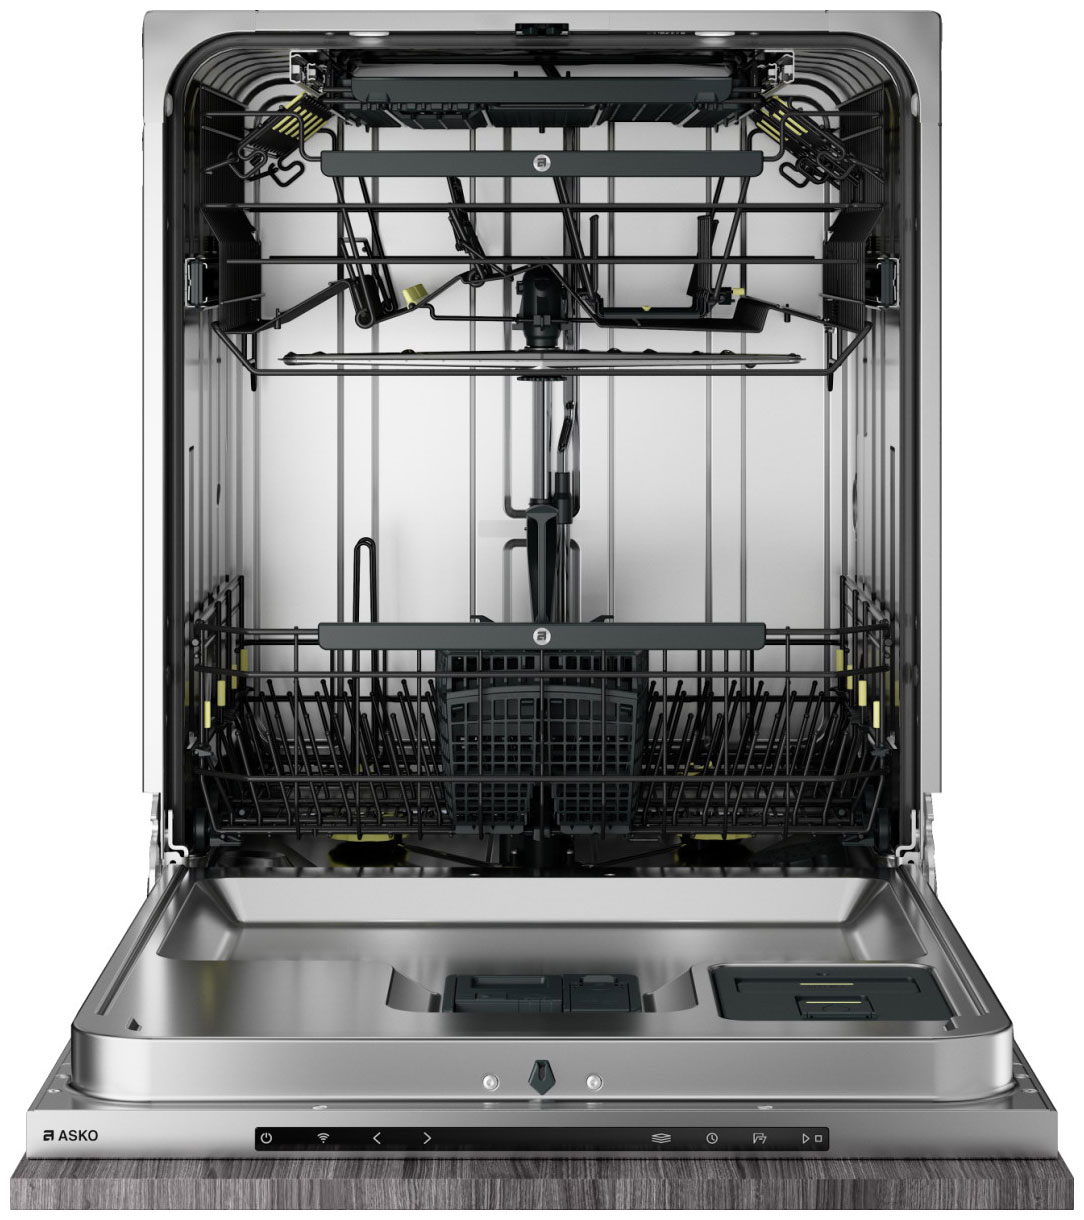 Встраиваемая посудомоечная машина Asko DSD746U встраиваемая посудомоечная машина asko dwcbi 231 s 1 серебристый